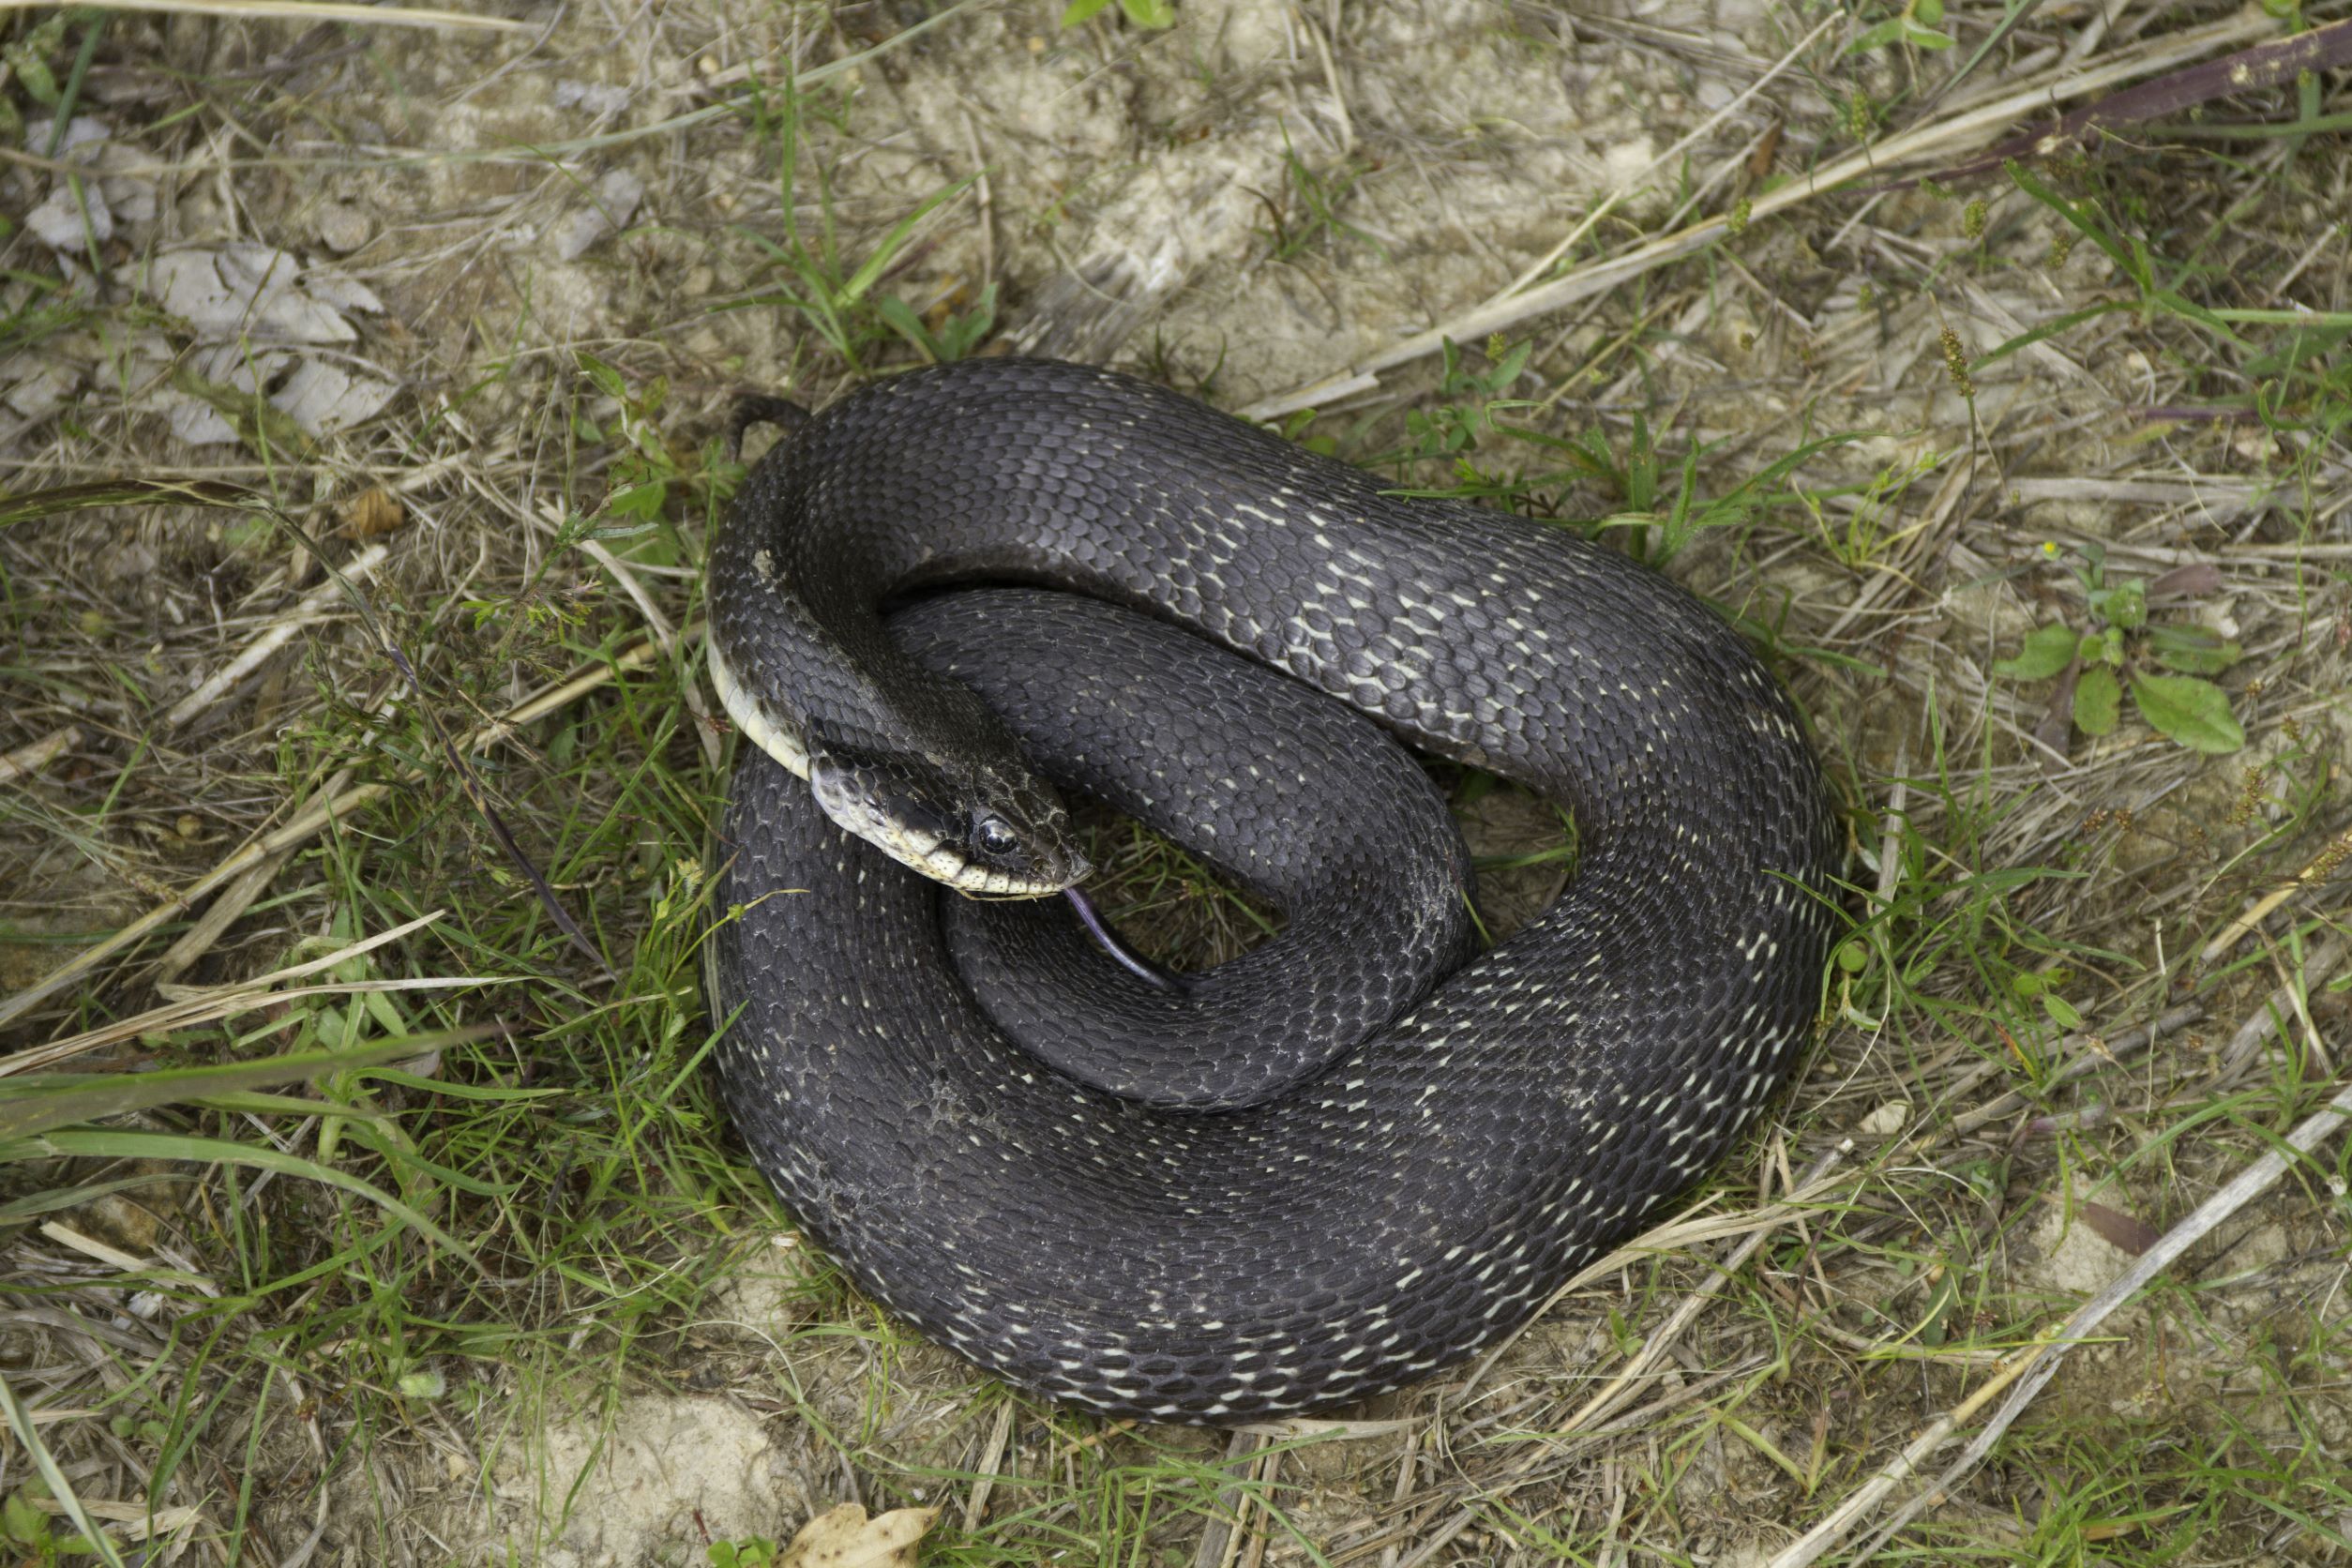 Eastern Hognose Snake appearance